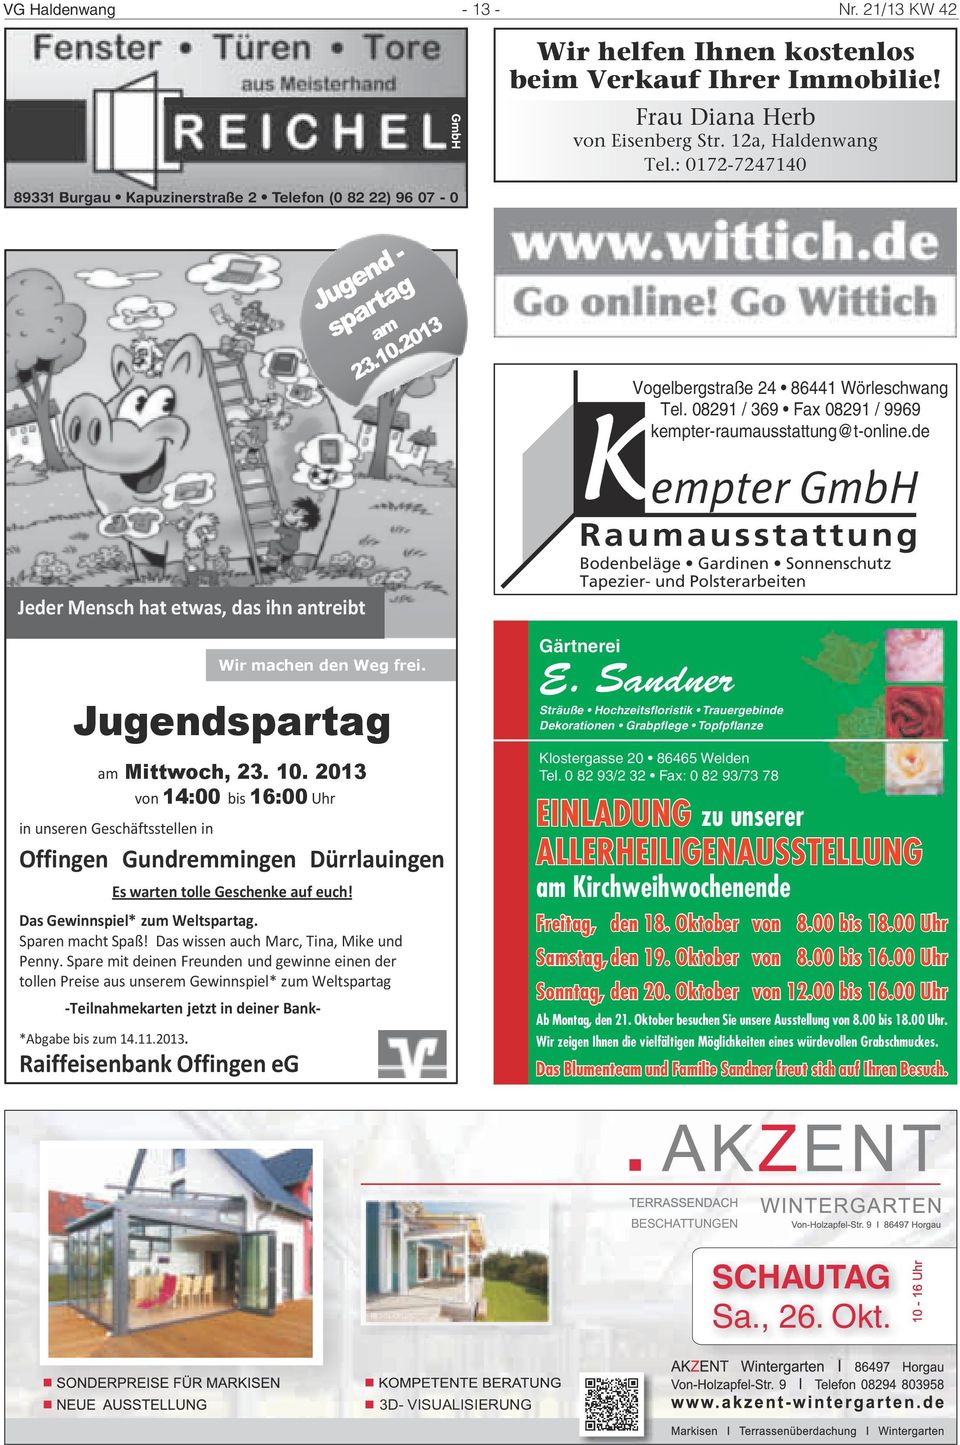 2013 von 14:00 bis 16:00 Uhr in unseren Geschäftsstellen in Offingen Gundremmingen Dürrlauingen Es warten tolle Geschenke auf euch! Das Gewinnspiel* zum Weltspartag. Sparen macht Spaß!